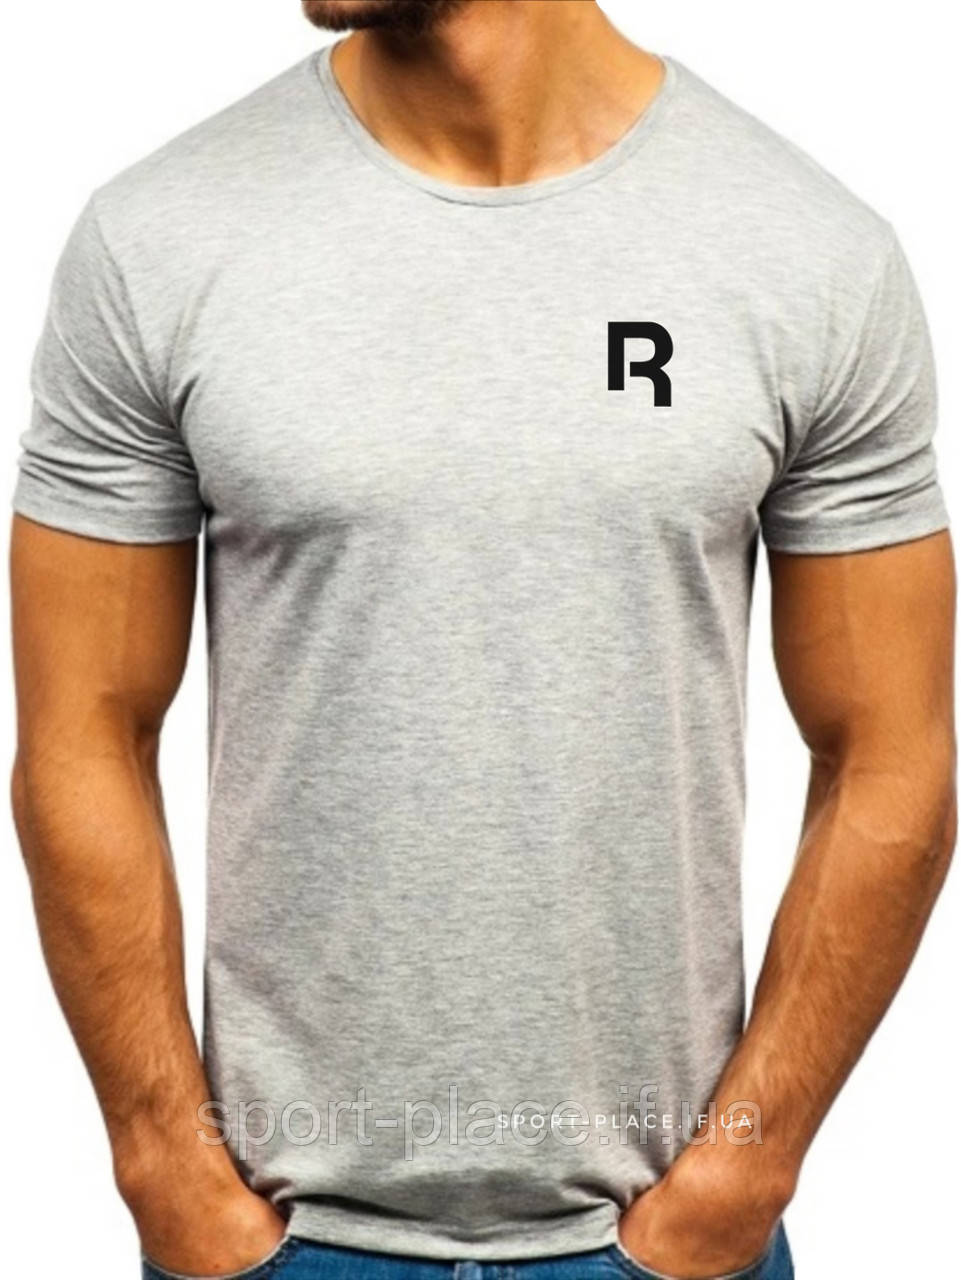 Чоловіча футболка Reebok (Рібок) сіра (маленька емблема) бавовна